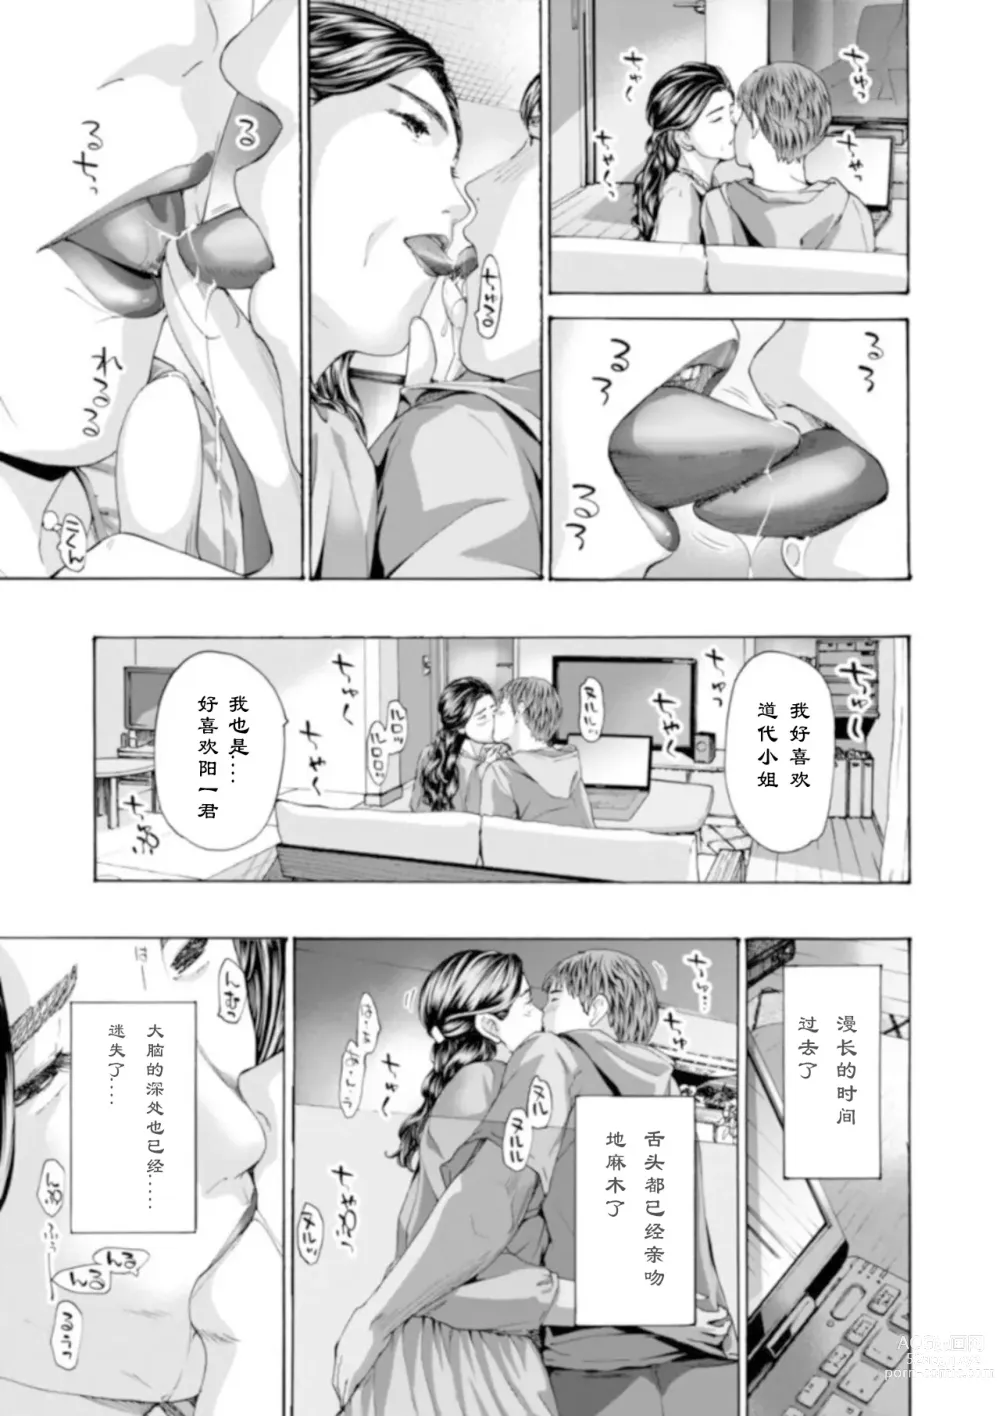 Page 7 of manga 慢慢来、慢慢来